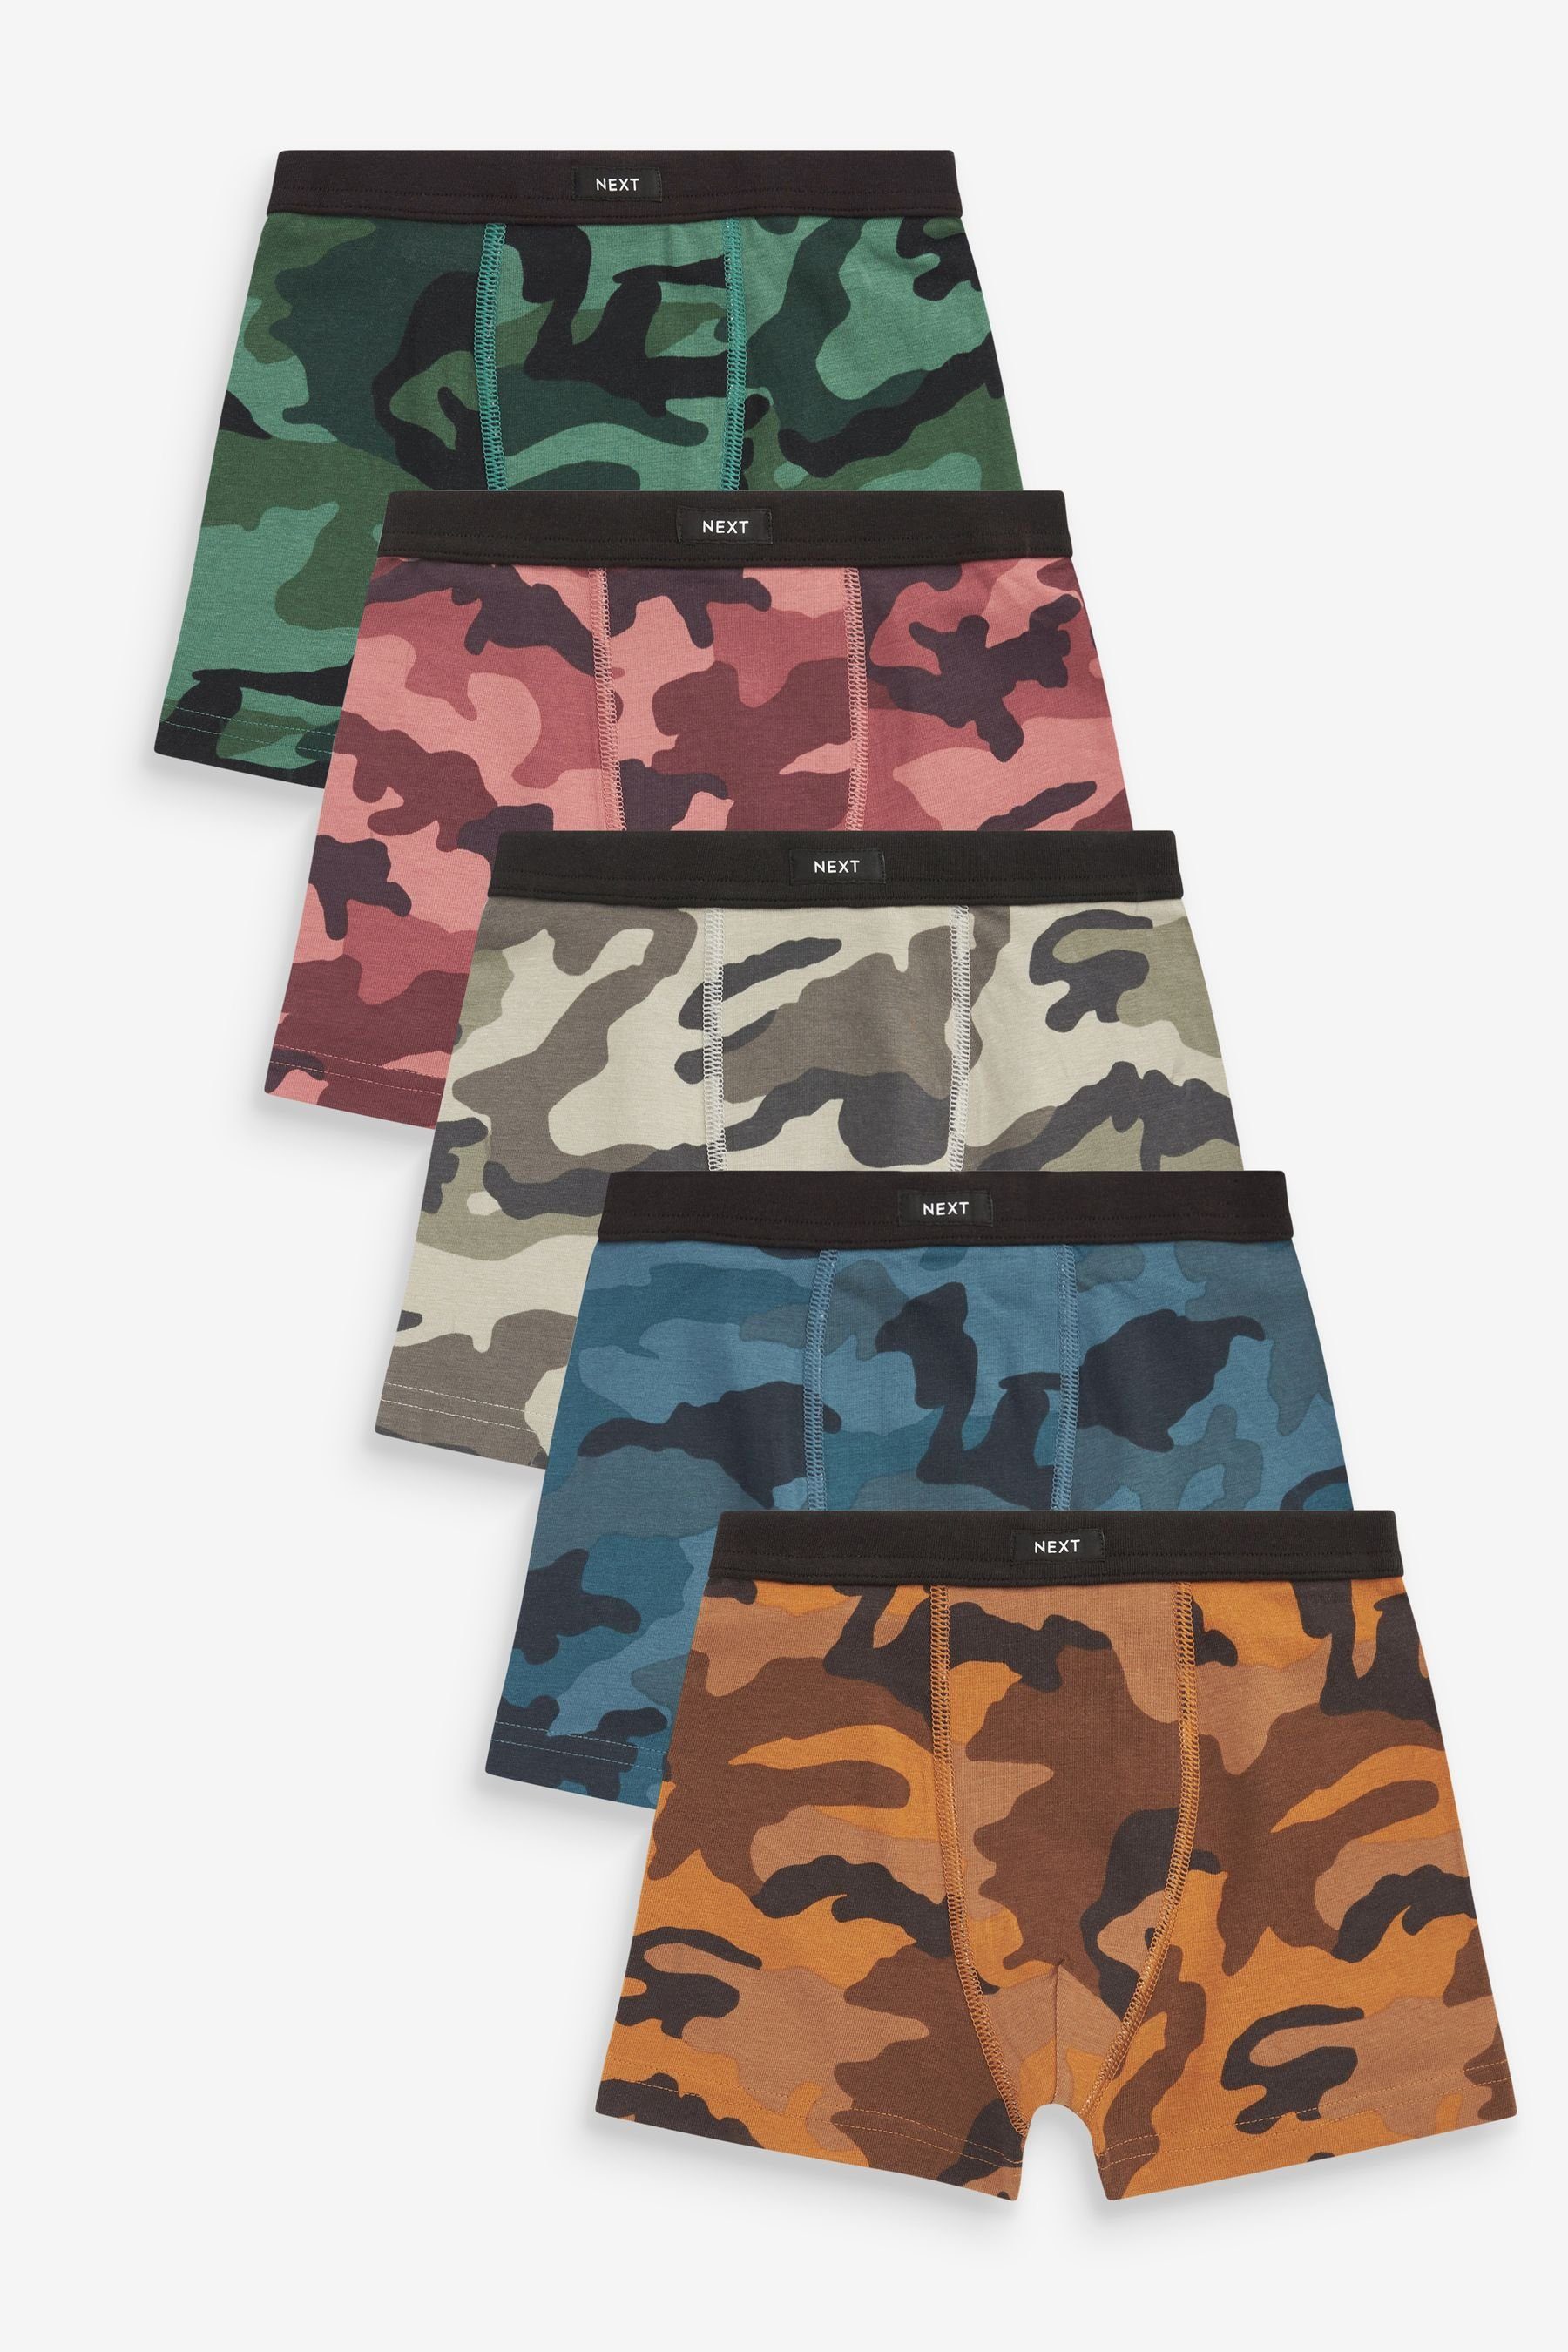 Trunk mit Boxershorts (5-St) weichem Print 5er-Pack Camouflage Taillenbund, Next